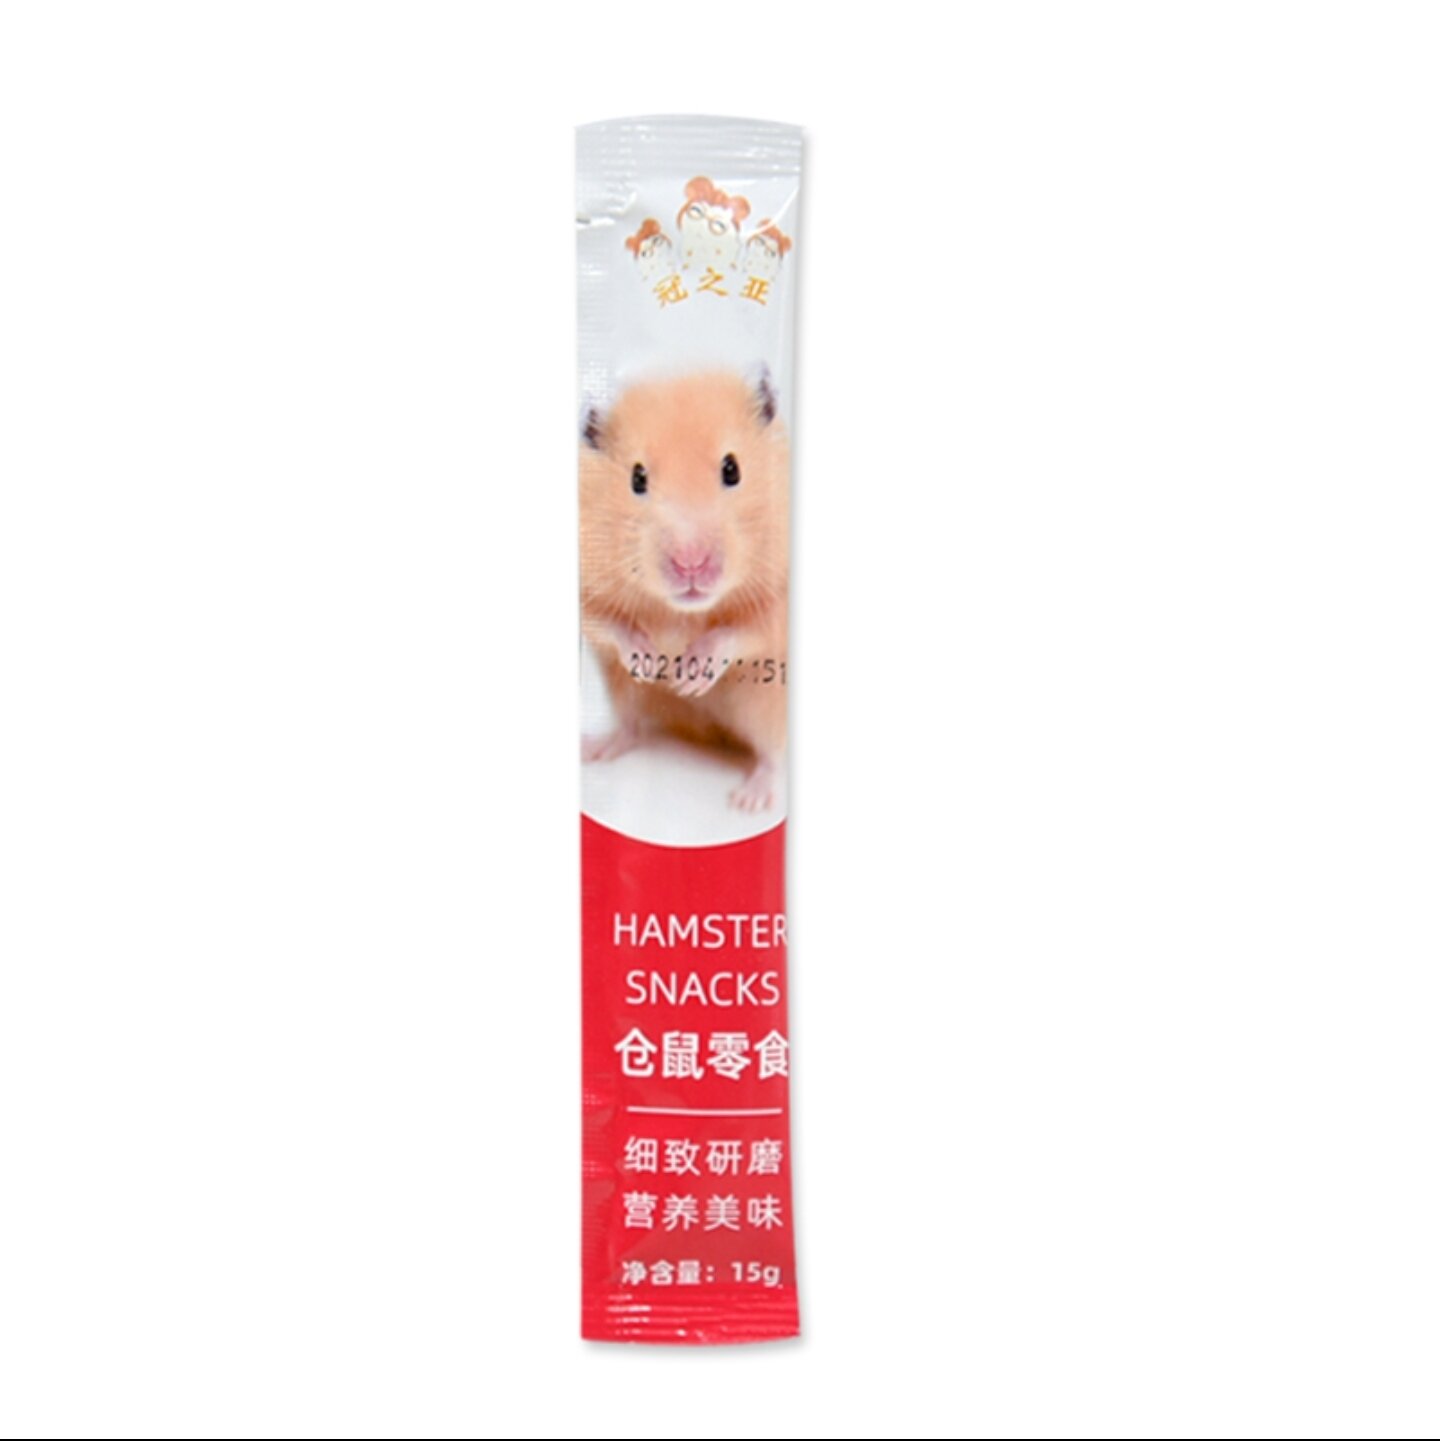 Súp thưởng cho Hamster biếng ăn (gói 15g)